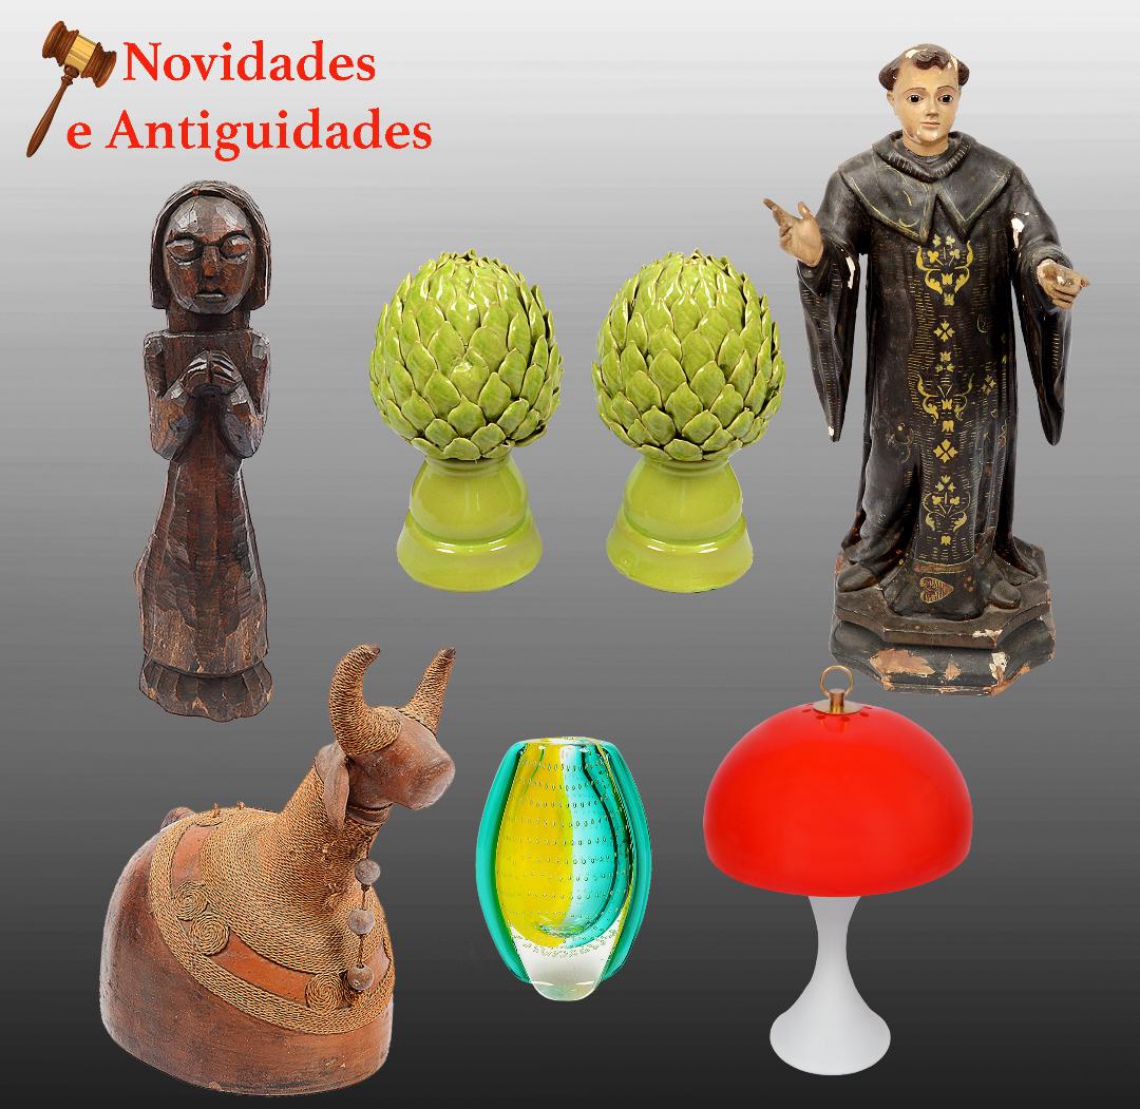 NOVIDADES E ANTIGUIDADES - Porcelanas,Mobiliário,Arte Popular,Joias,Numismática,7ª Arte,Quadros